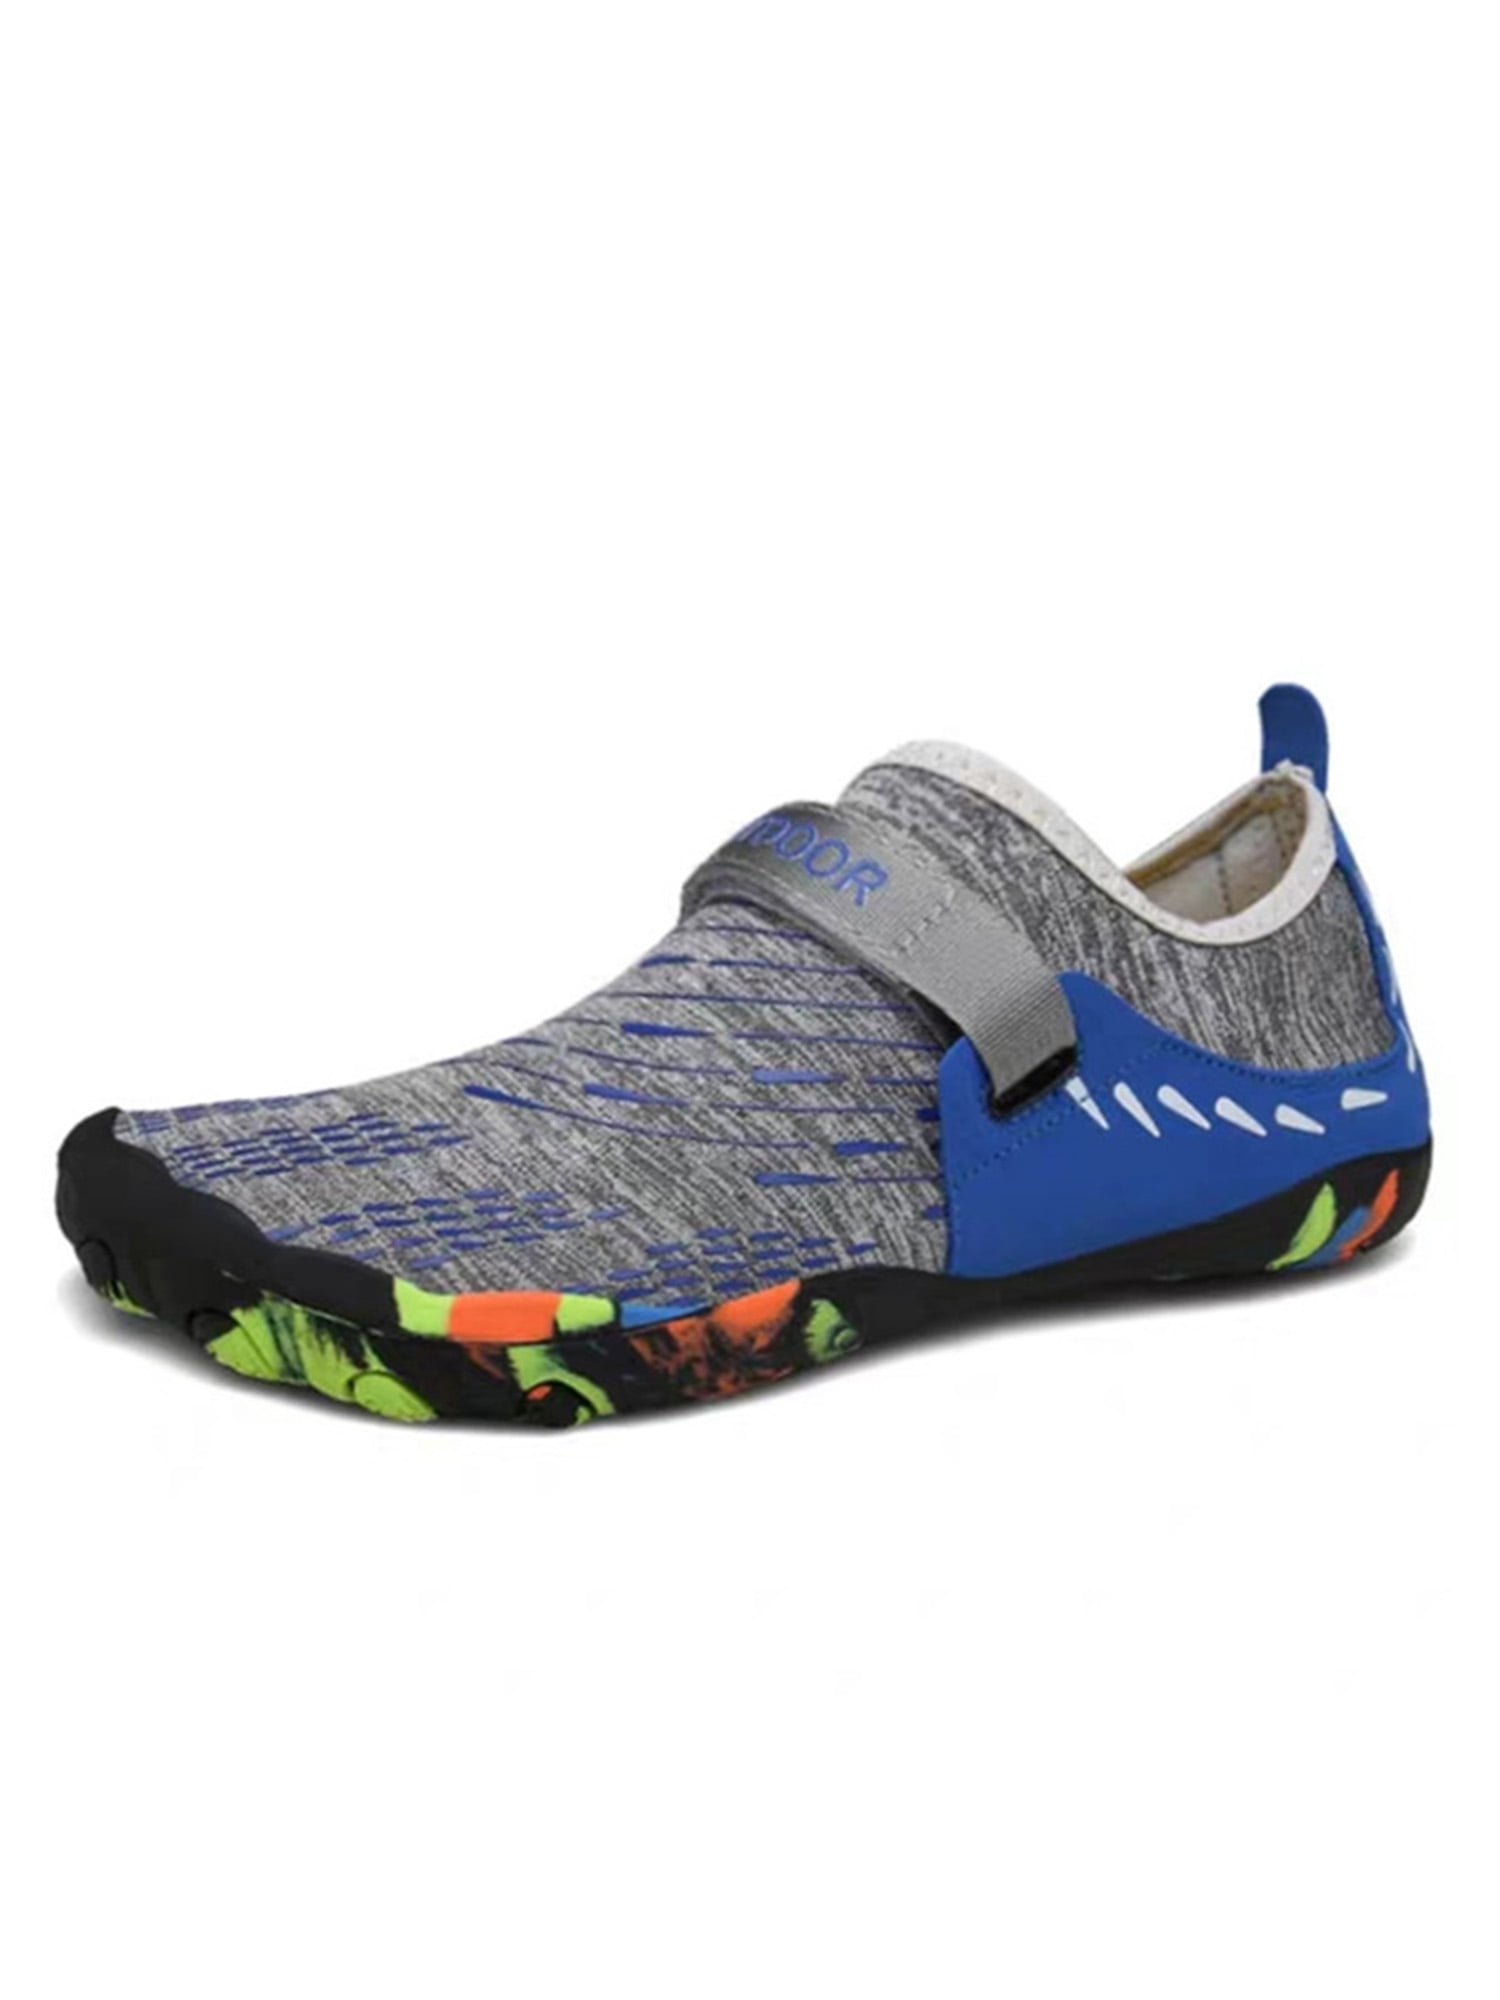 2021 Aqua Surf Swim Wetsuit Water Shoes Yoga Pumps Sneakers Non Slip 